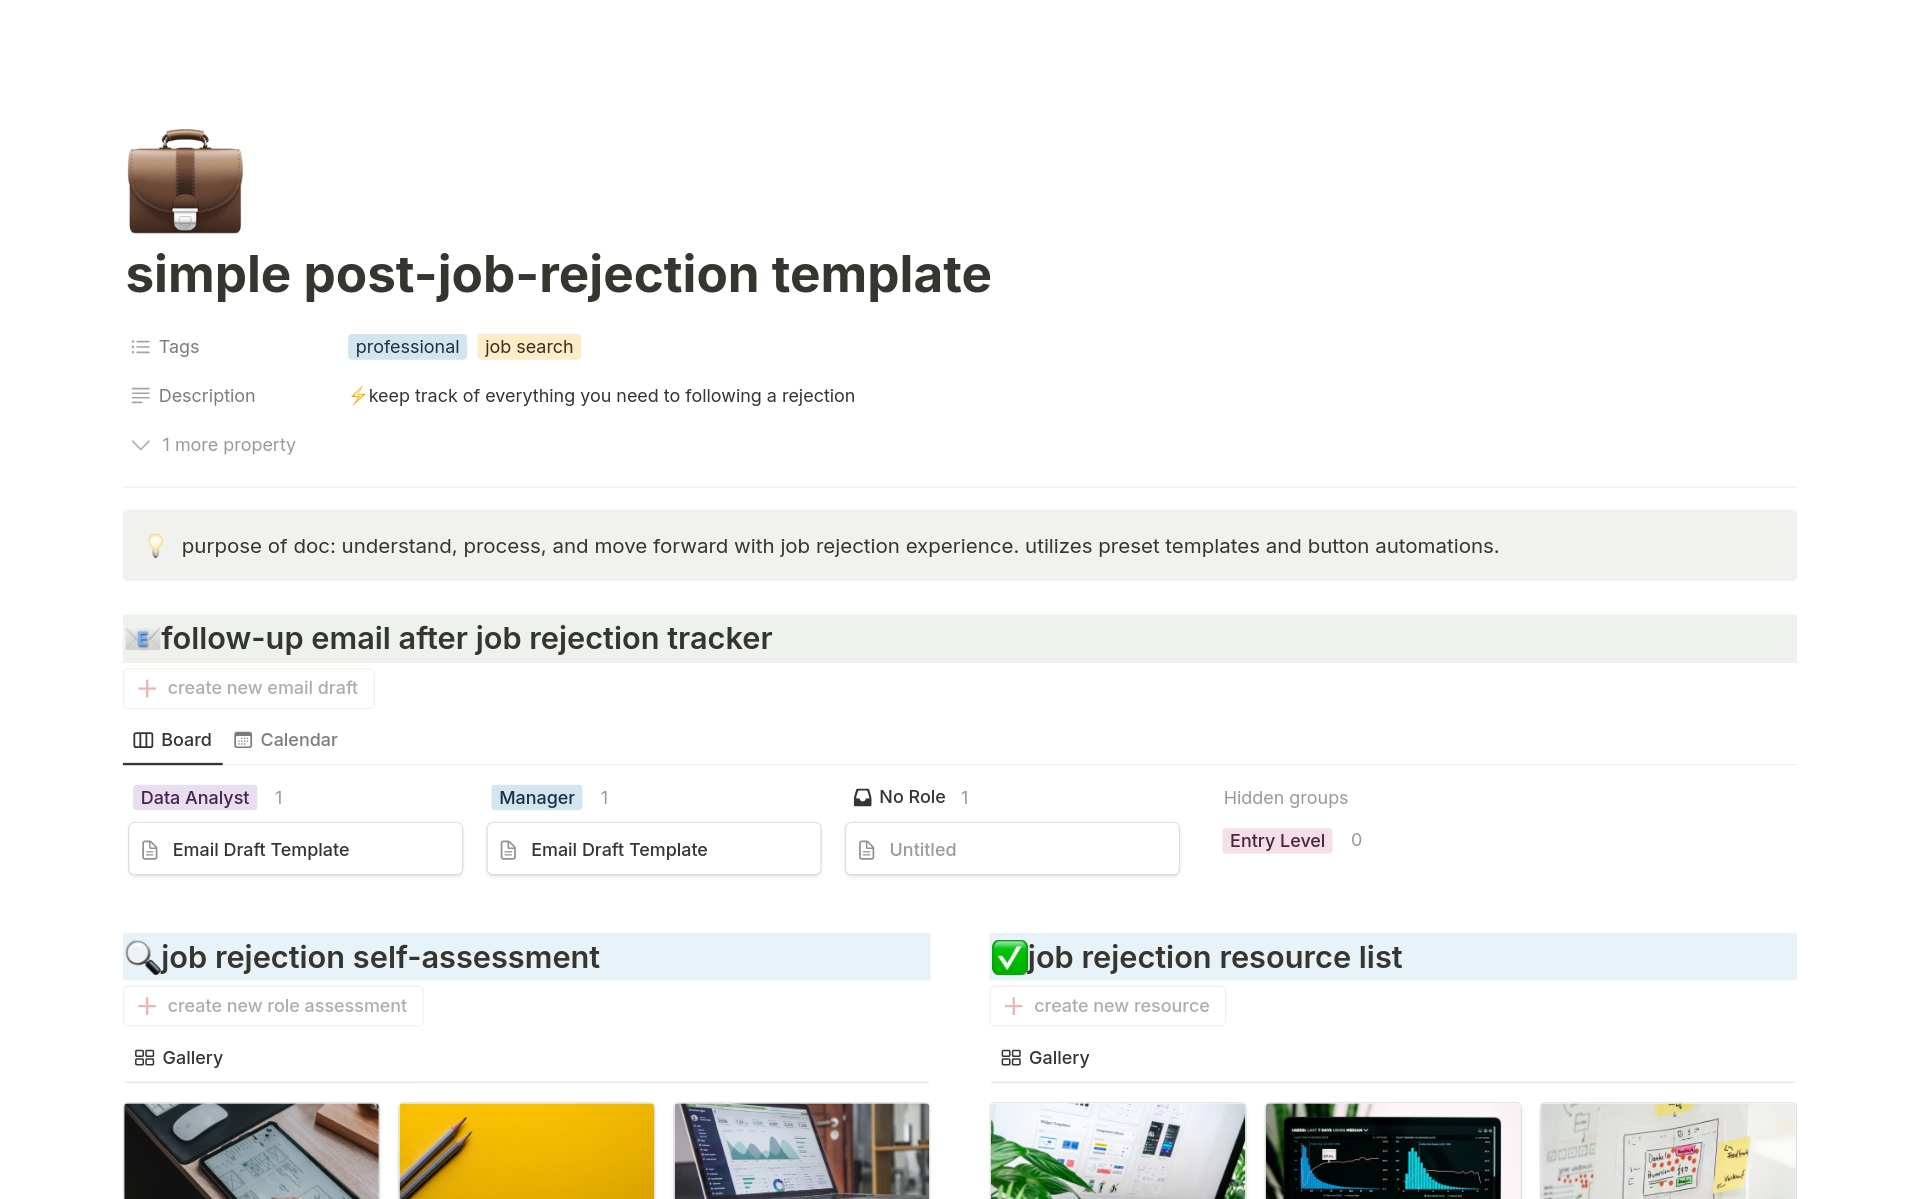 Vista previa de una plantilla para simple post-job-rejection tracker